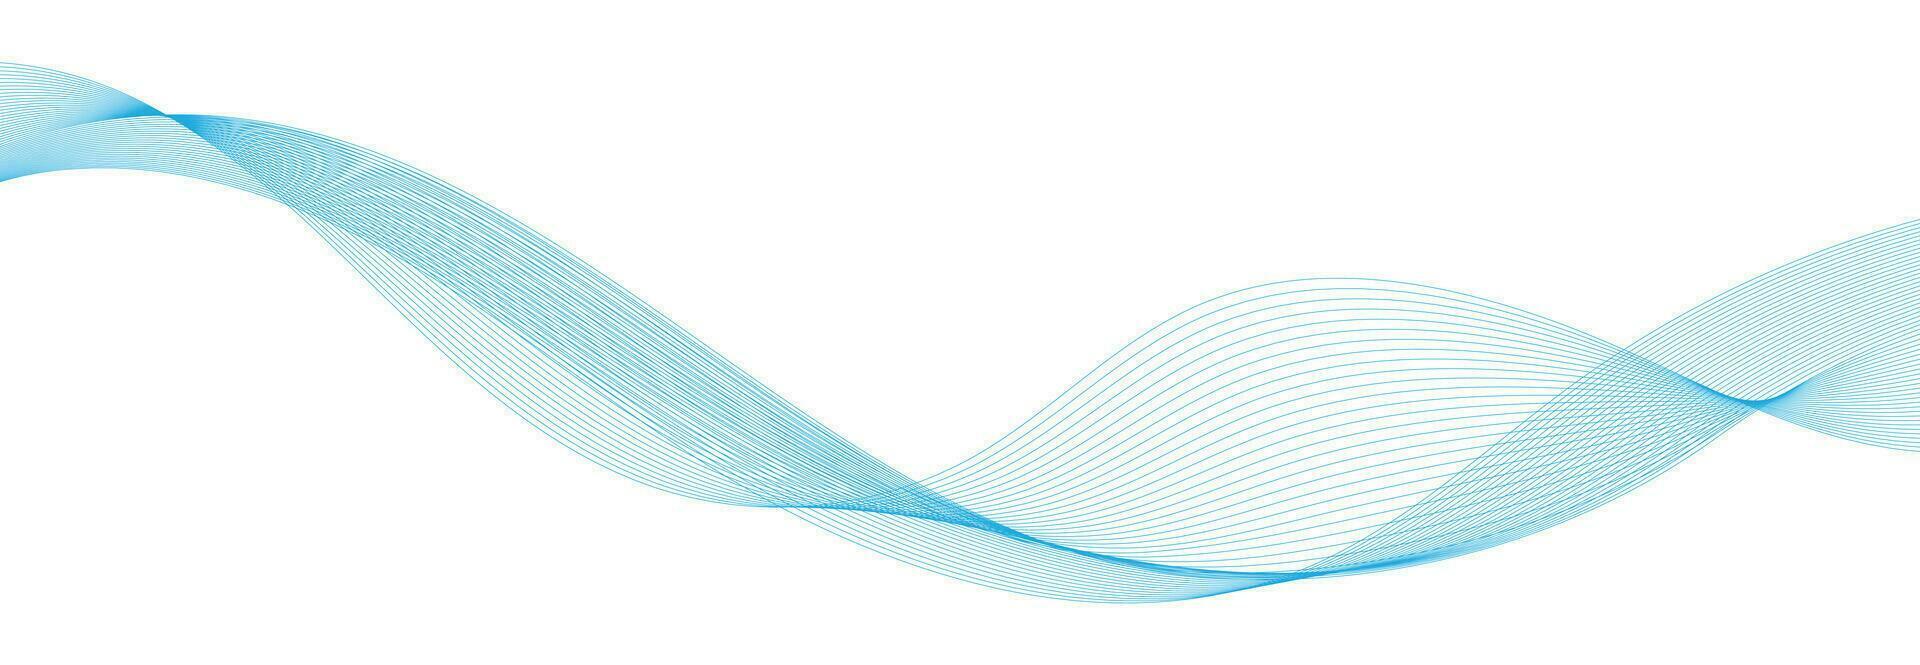 vector abstract banier ontwerp. vloeistof vector vormig achtergrond. klassiek banier sjabloon patroon voor sociaal media en web plaatsen. blauw golvend lijnen. Golf spandoek.